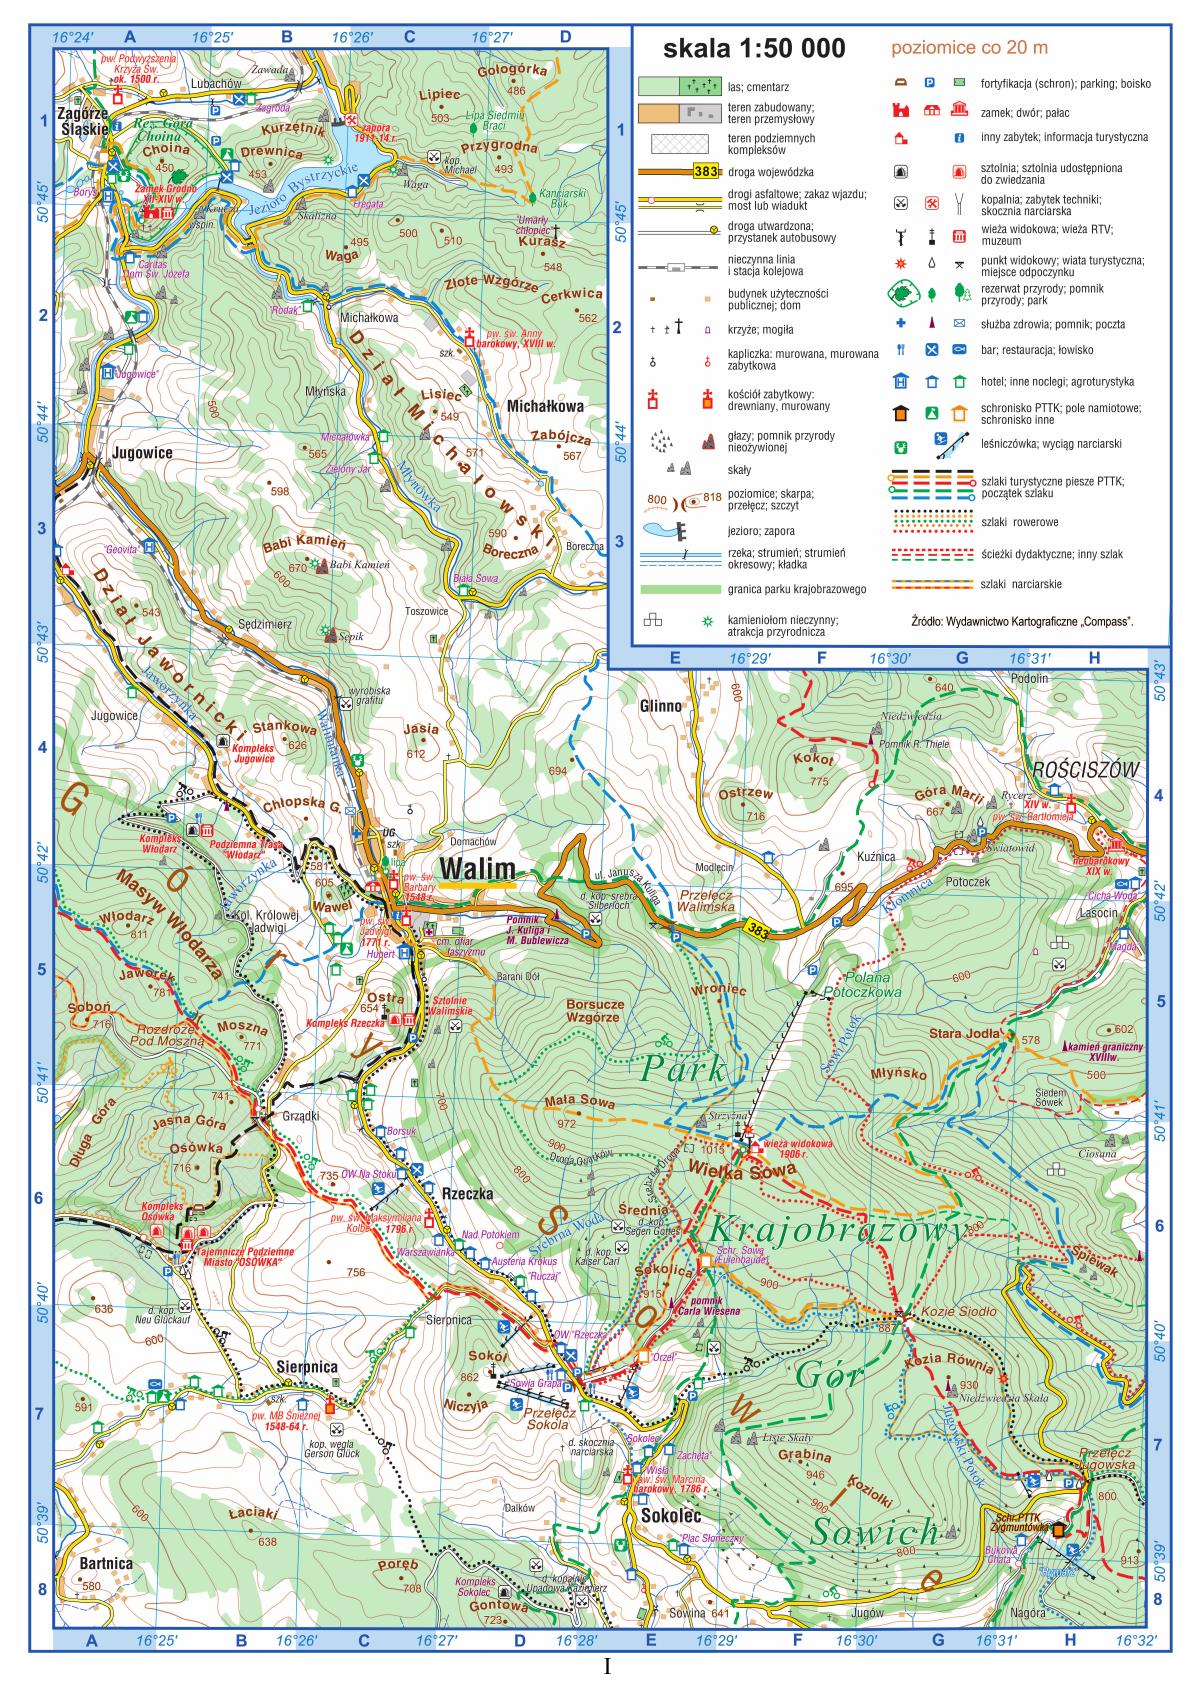 Mapa szczegółowa fragmentu Gór Sowich - strona I barwnego materiału źródłowego